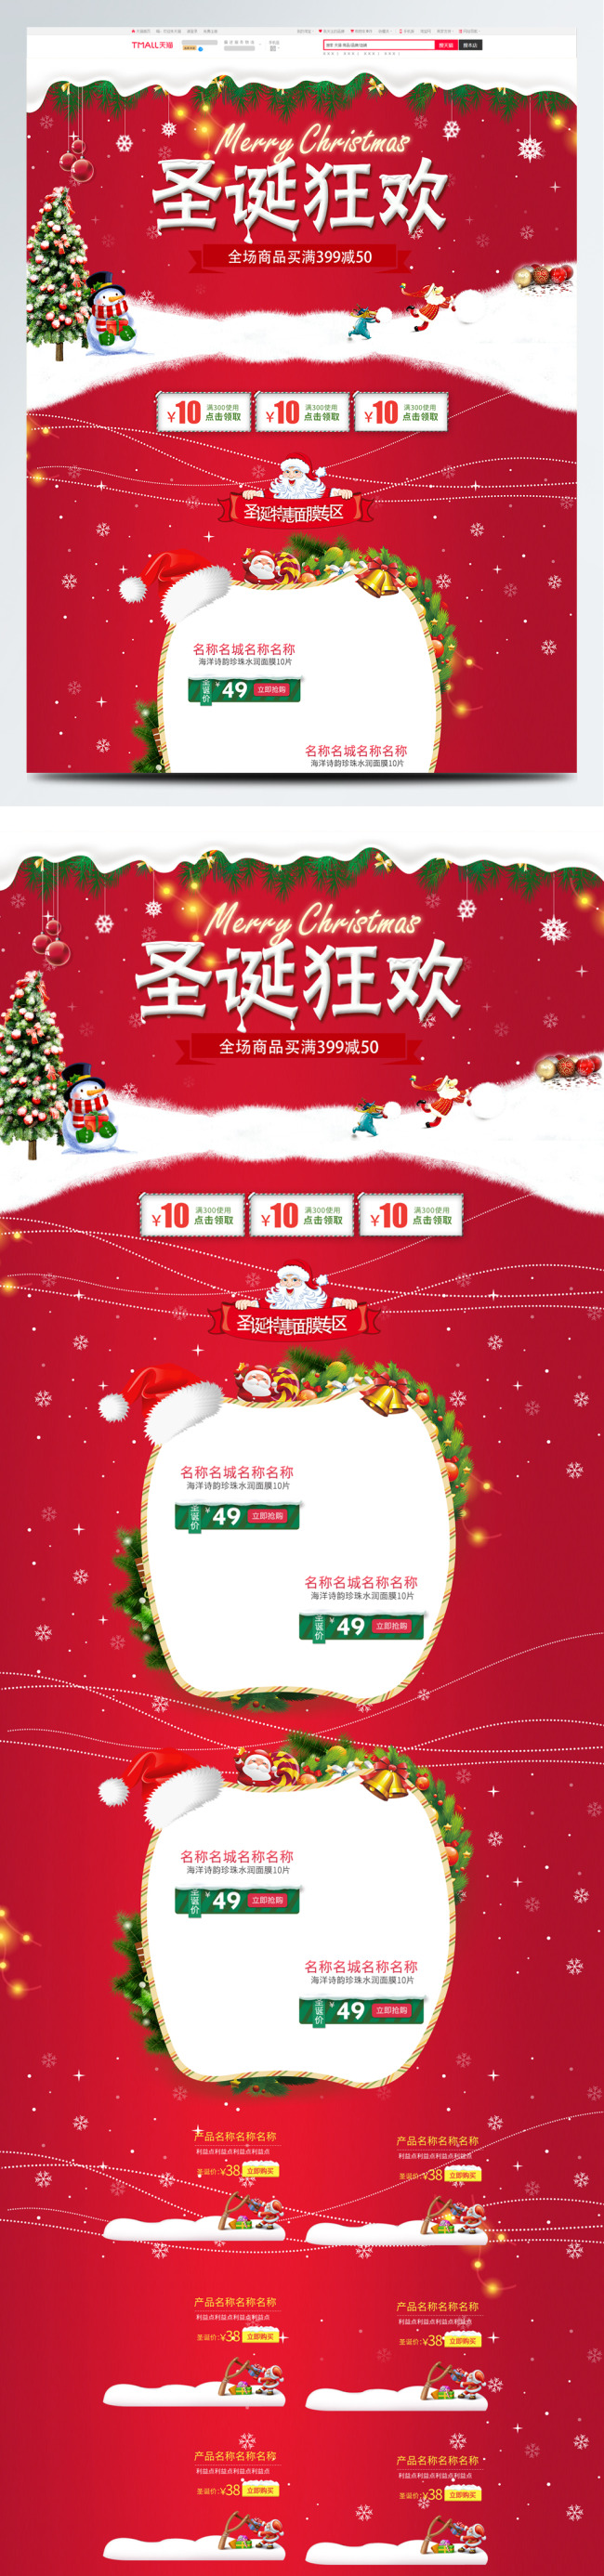 红色简约节日喜庆圣诞狂欢电商首页模板淘宝图片